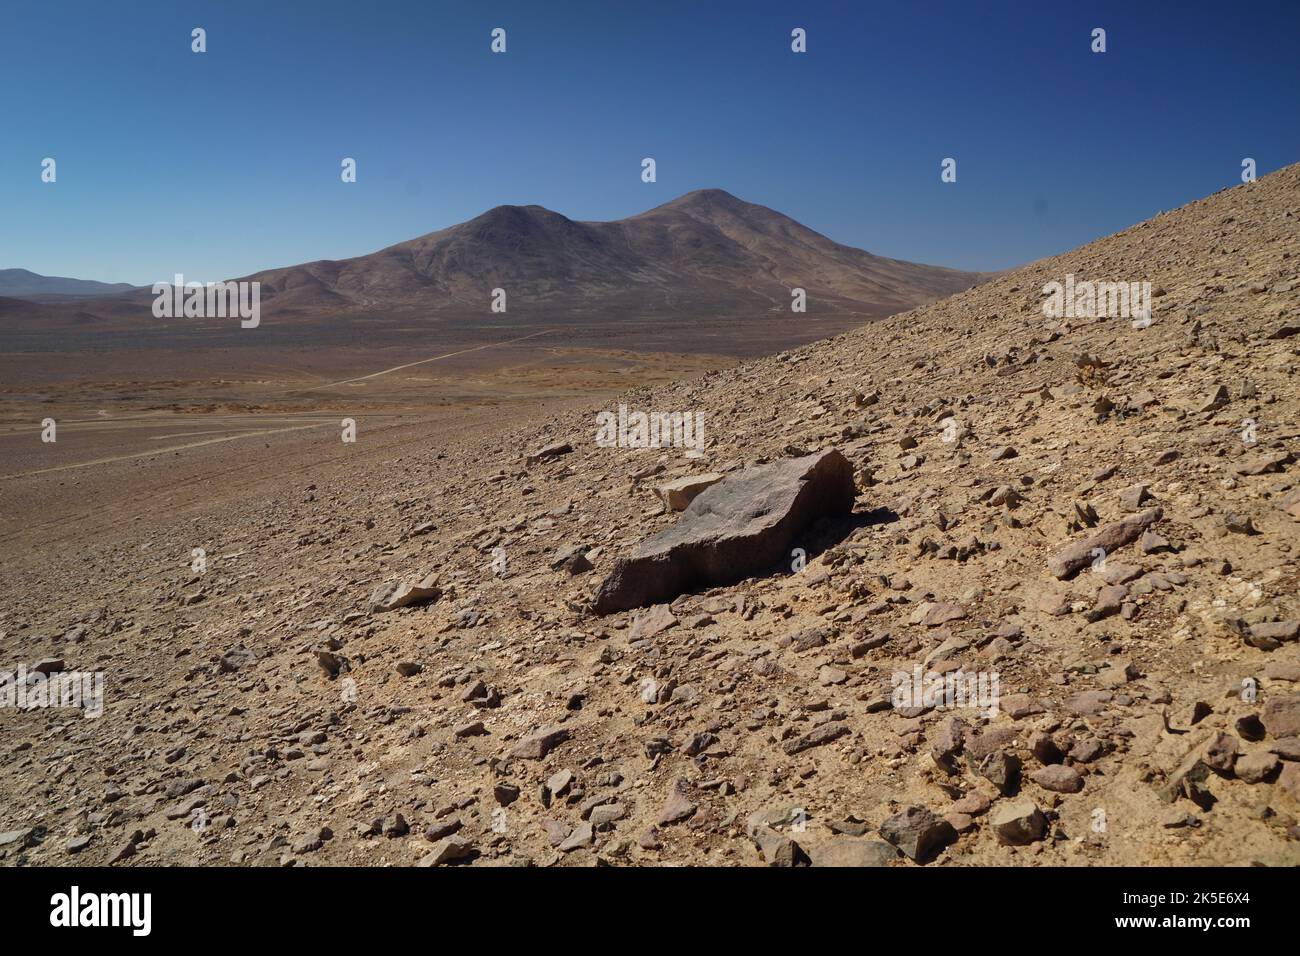 Die chilenische Atacama-Wüste ist die trockenste unpolare Wüste der Erde -- und ein fertiges Analogon für das zerklüftete, aride Gelände des Mars. Nur wenige Orte sind lebensfeindlich wie die chilenische Atacama-Wüste. Es ist die trockenste unpolare Wüste der Erde, und nur die widerstandsreichsten Mikroben überleben dort. Seine felsige Landschaft liegt seit Äonen ungestört, extremen Temperaturen und Sonneneinstrahlung ausgesetzt. Eine einzigartige Version eines Originalbildes der NASA. Quelle: NASA/JPL-Caltech Stockfoto